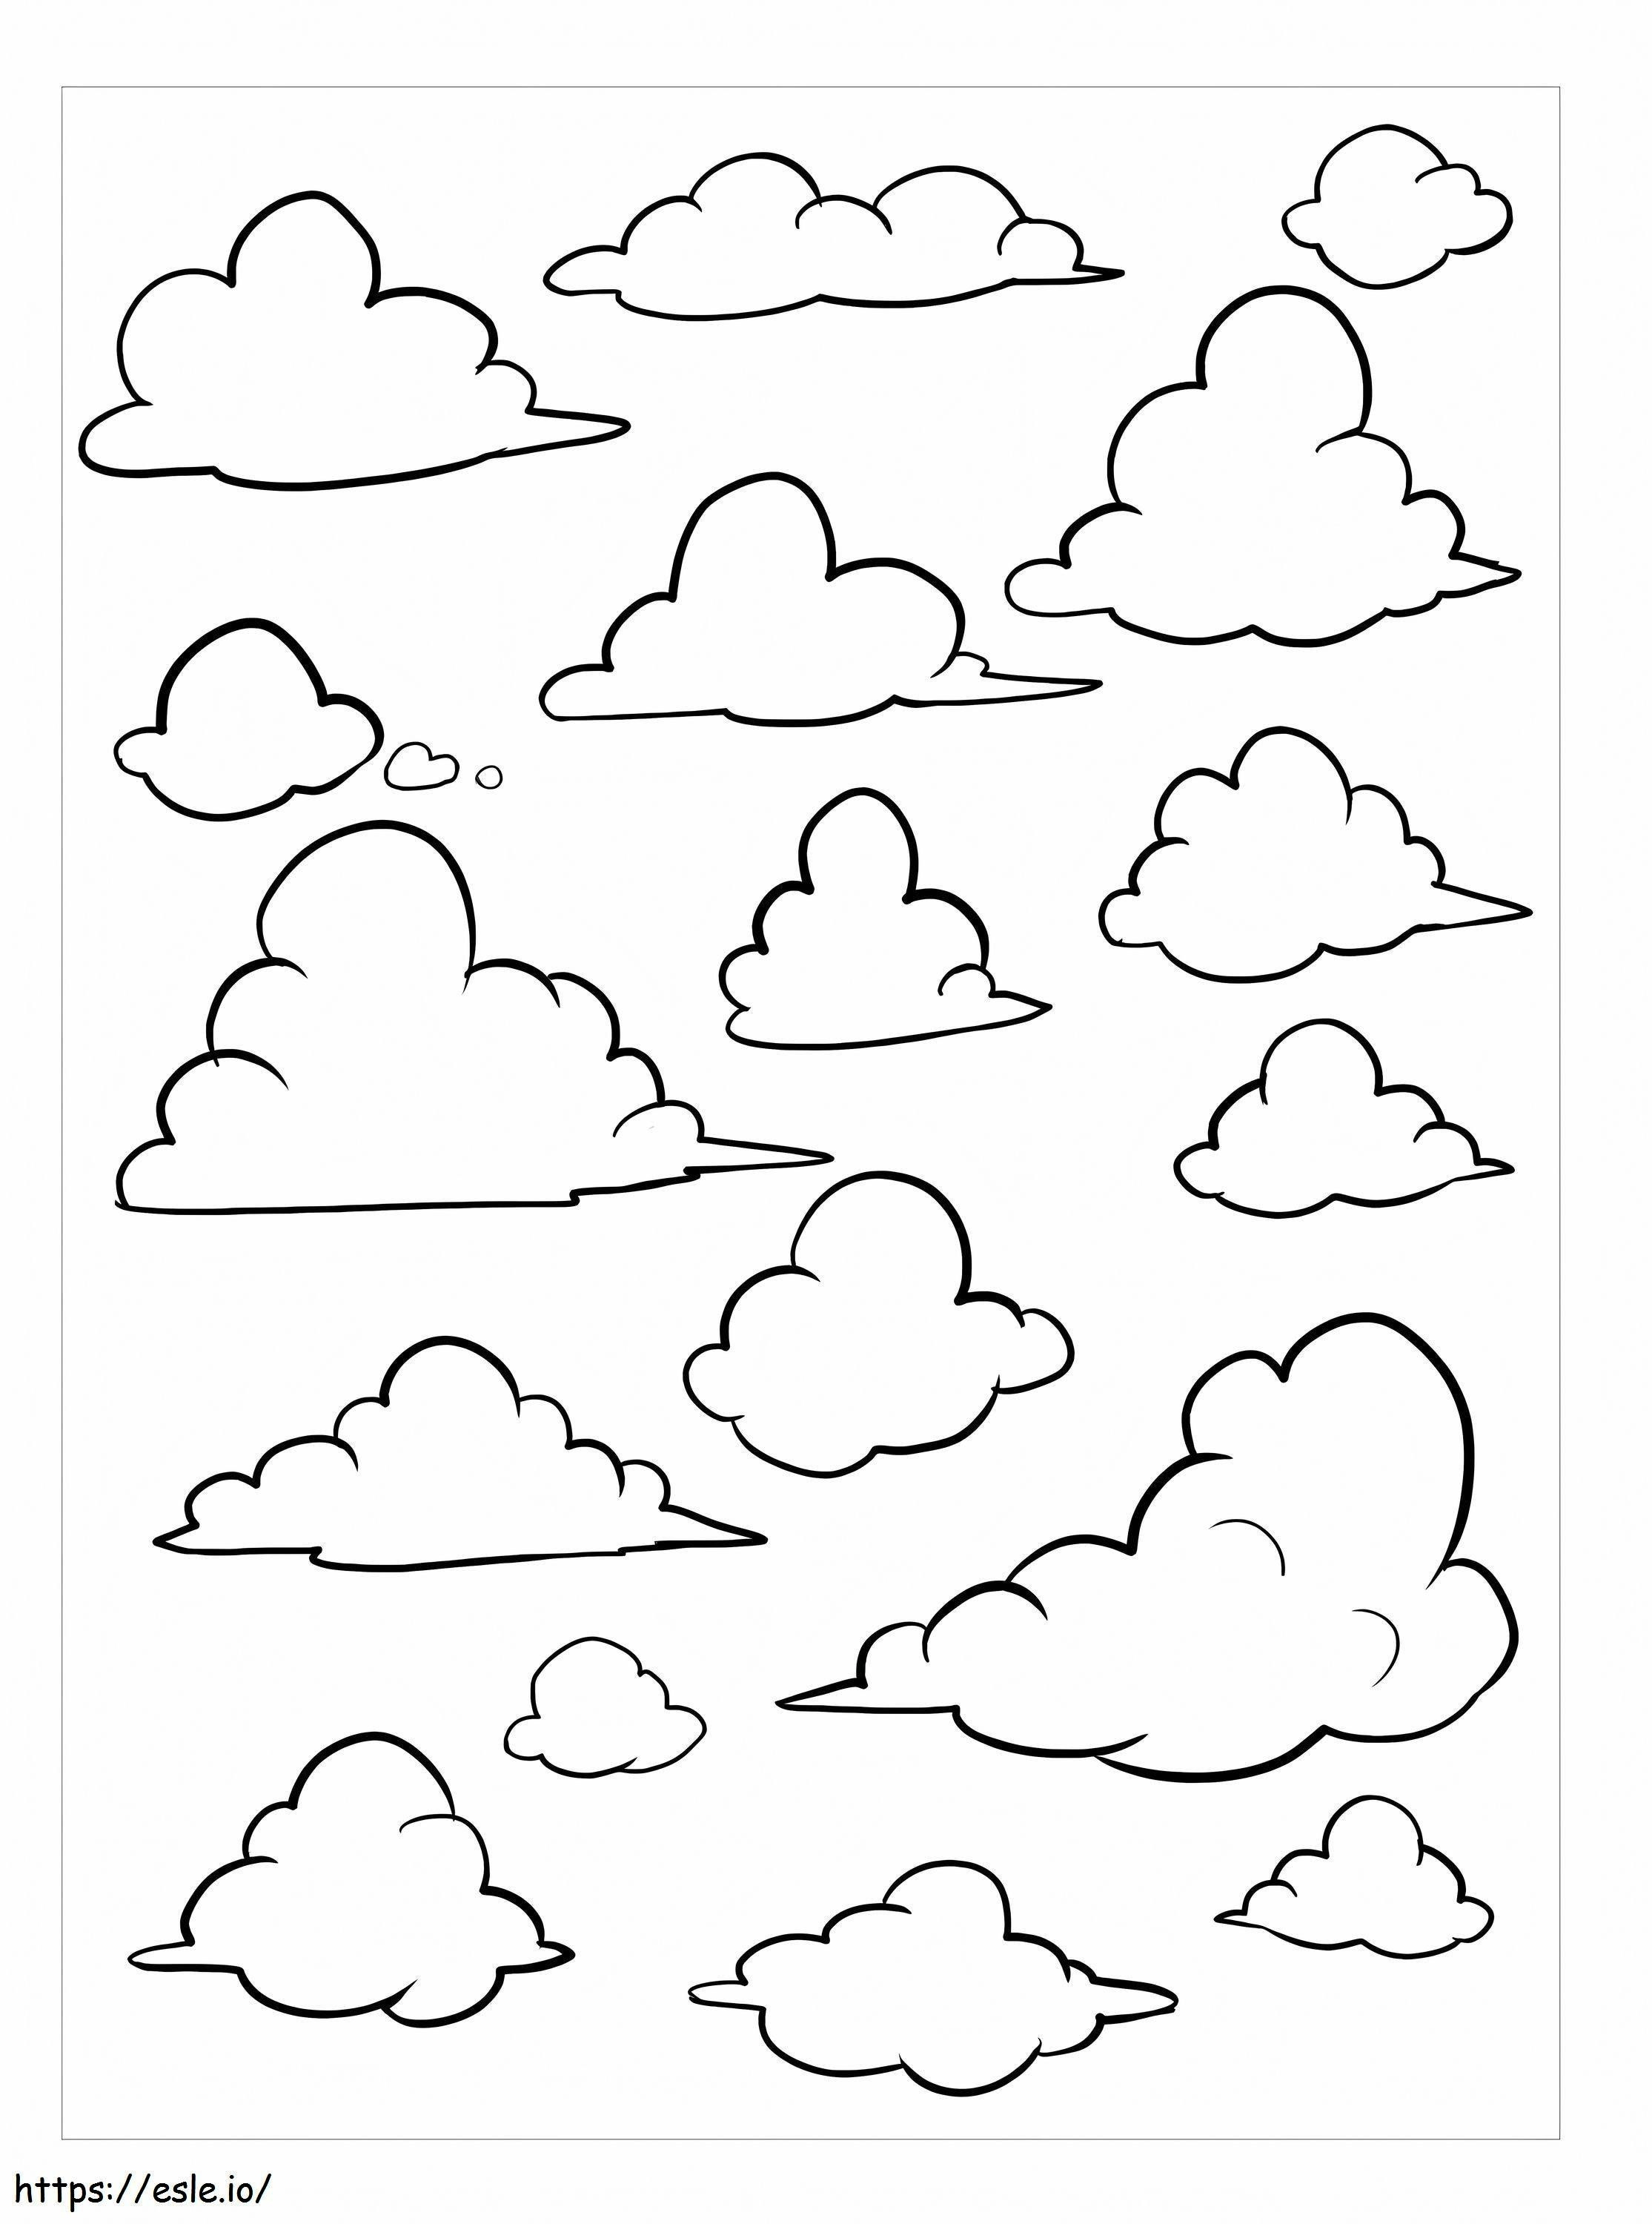 Tipos básicos de nubes para colorear